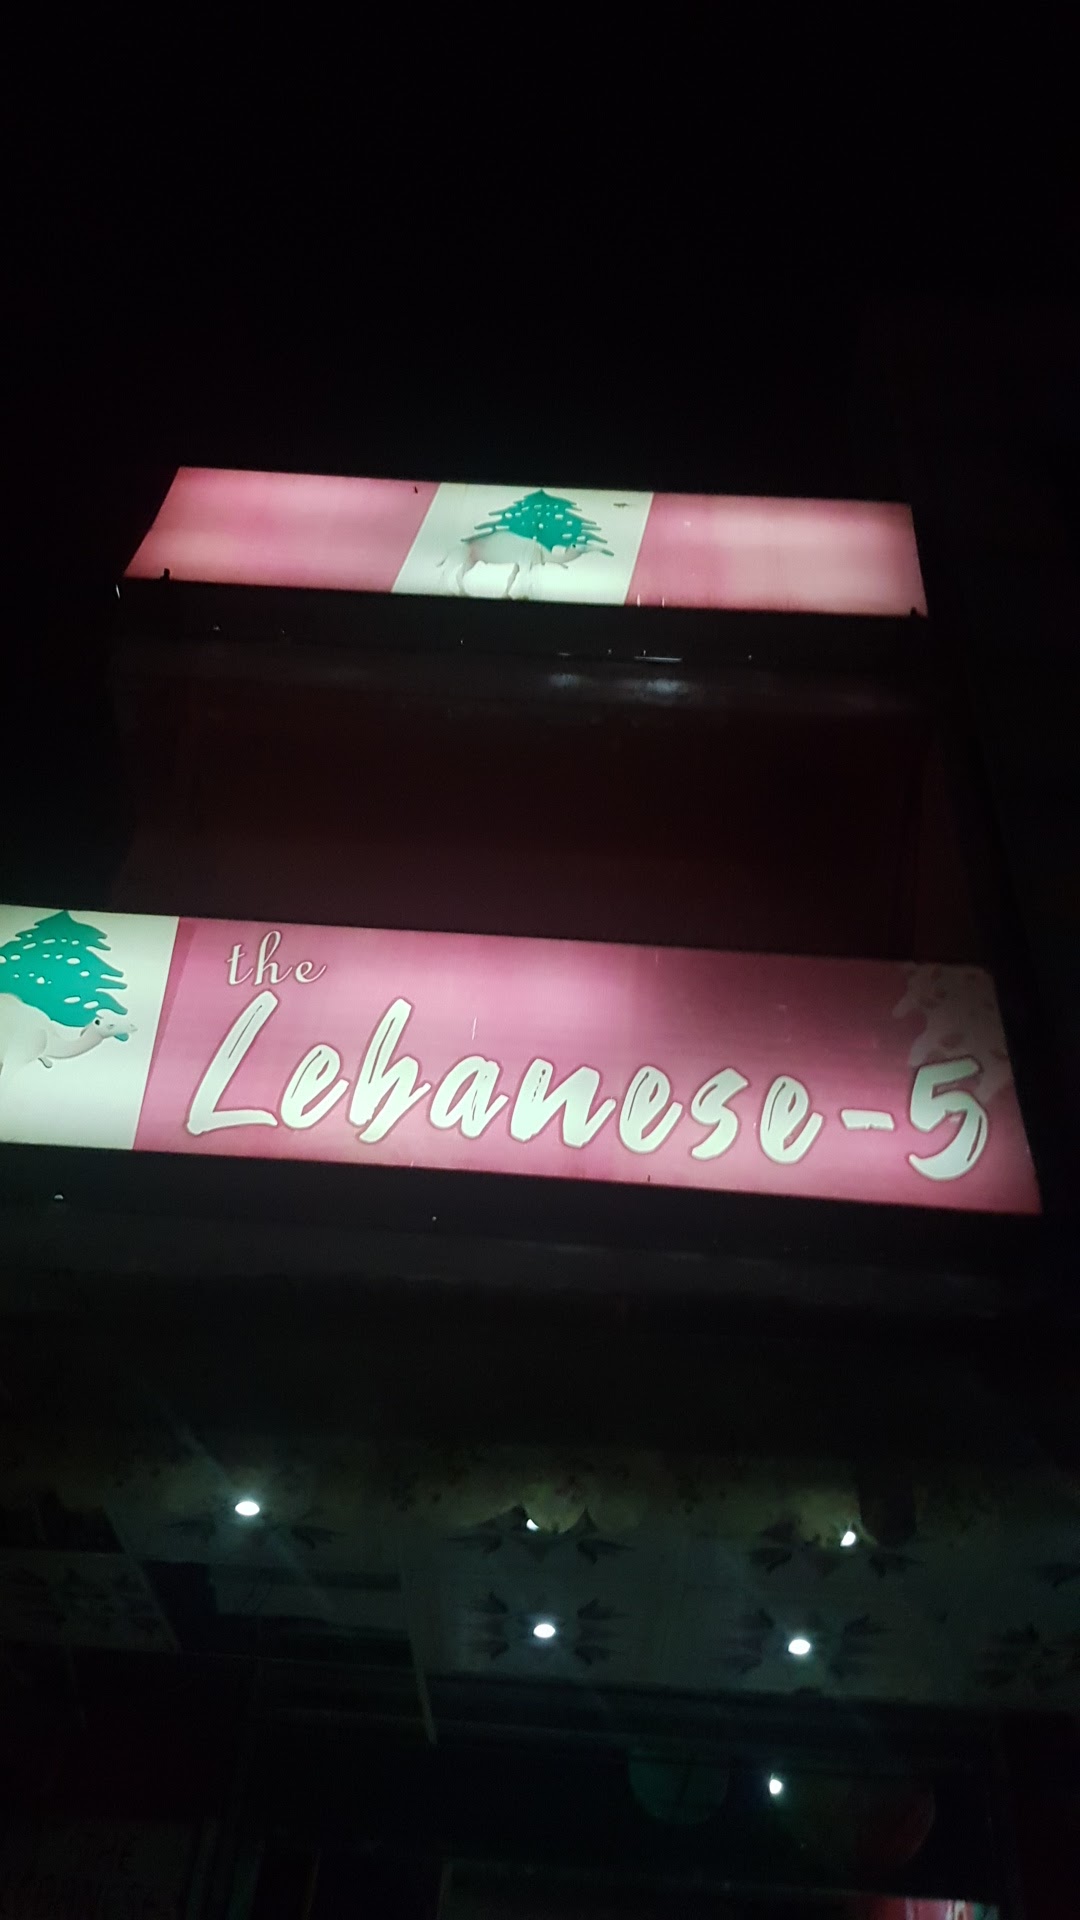 The lebanese-5